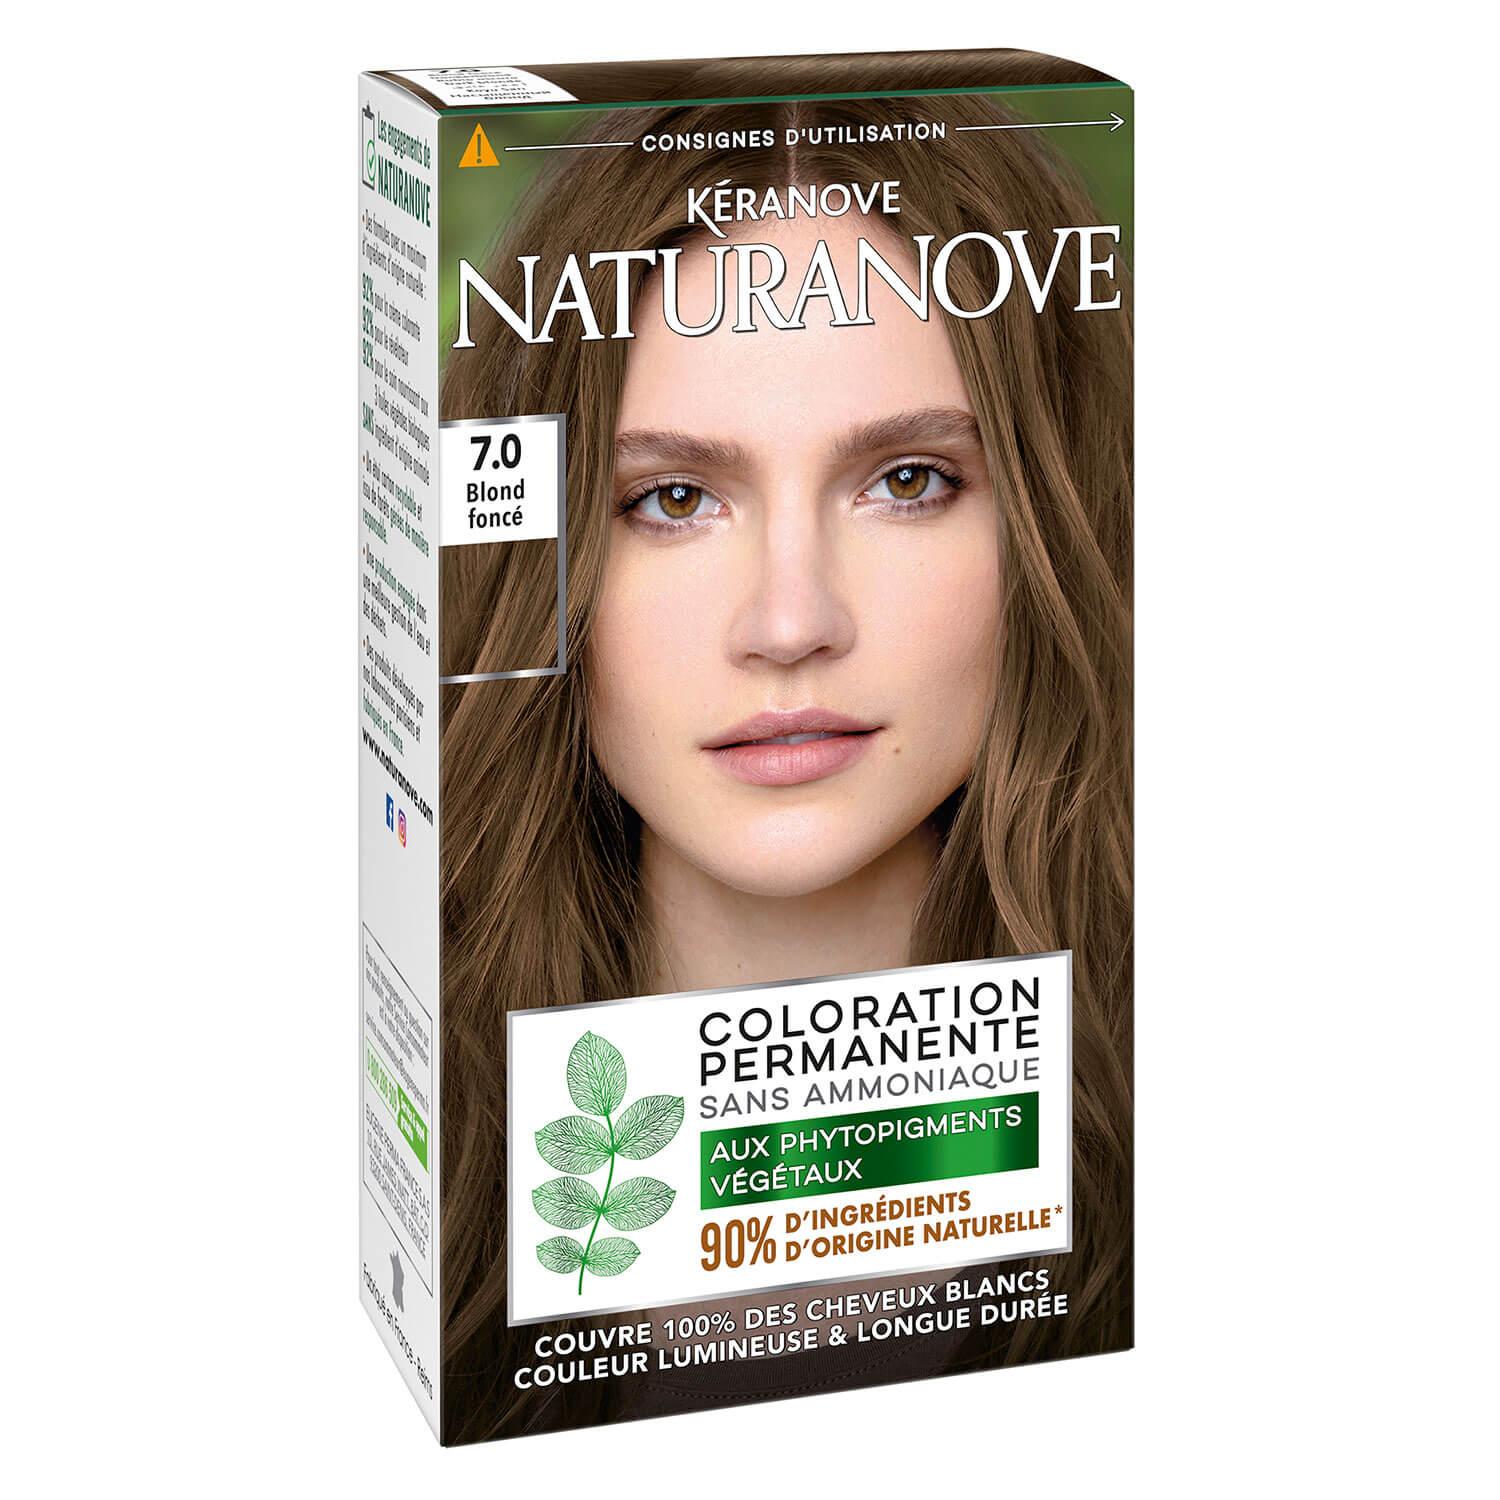 Naturanove - Coloration Permanente Blond Foncé 7.0